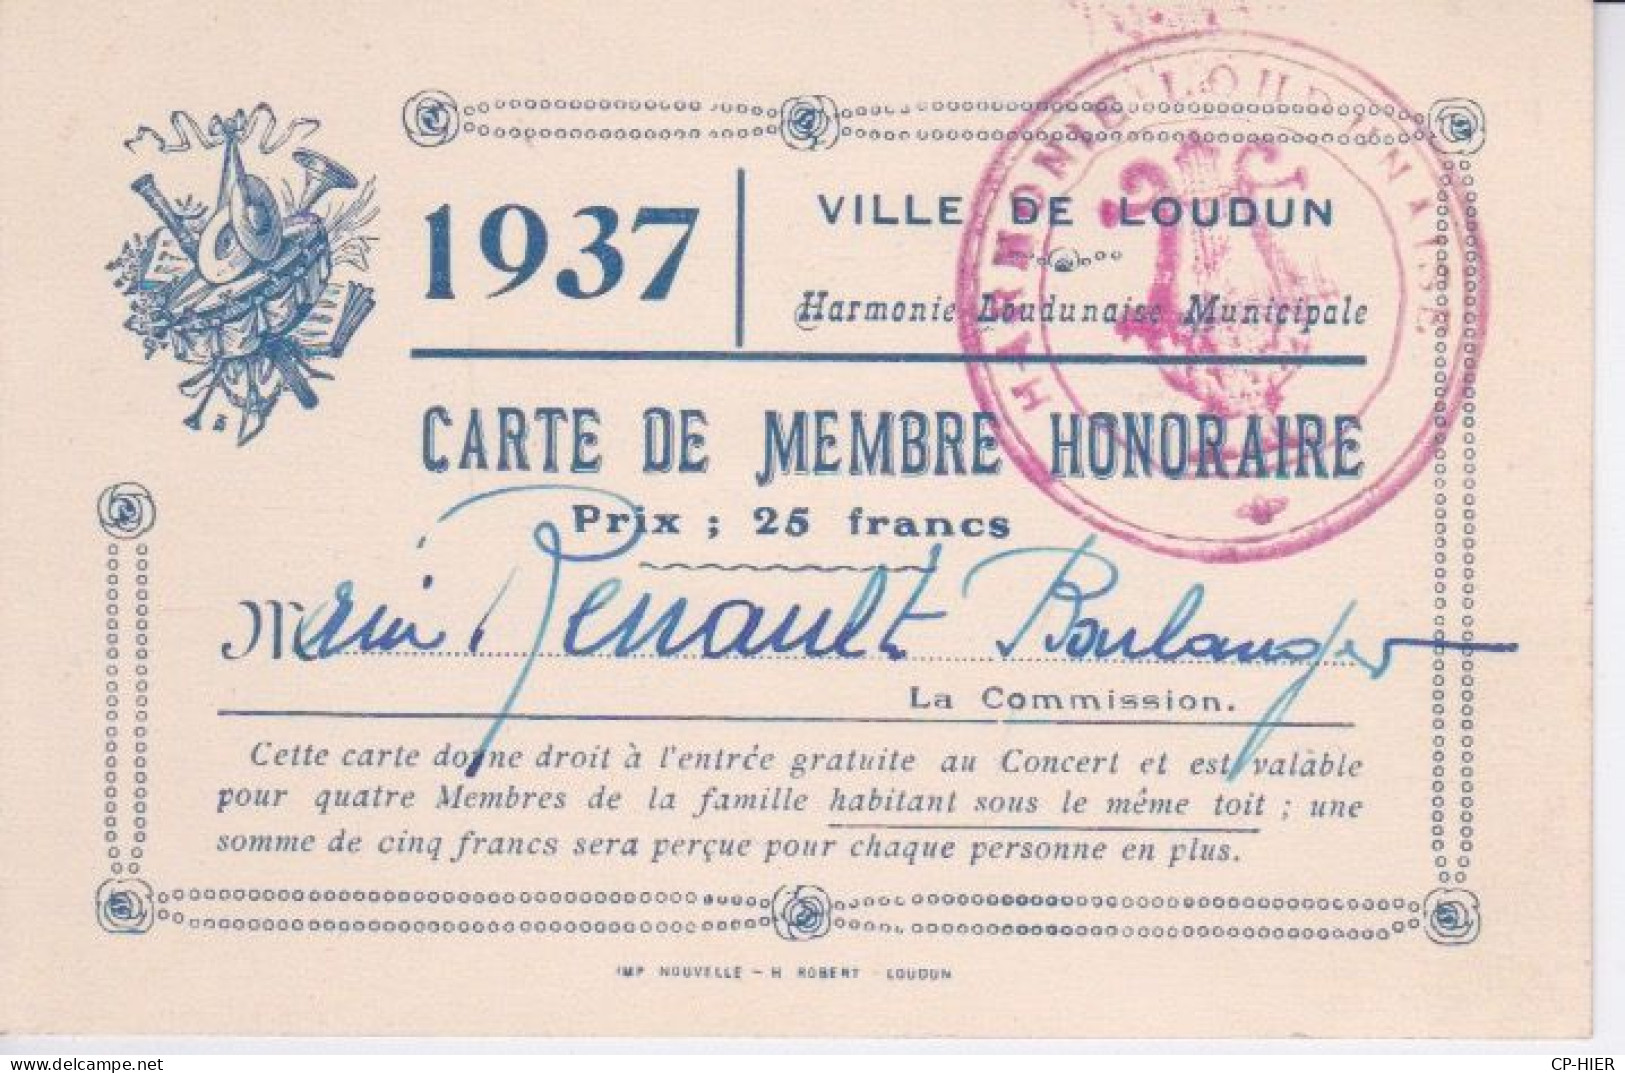 86 - VIENNE - CARTE DE MEMBRE HONORAIRE 1937 -  VILLE DE LOUDUN - MUSIQUE + CACHET  HARMONIE LOUDUNAISE MUNICIPALE - Loudun